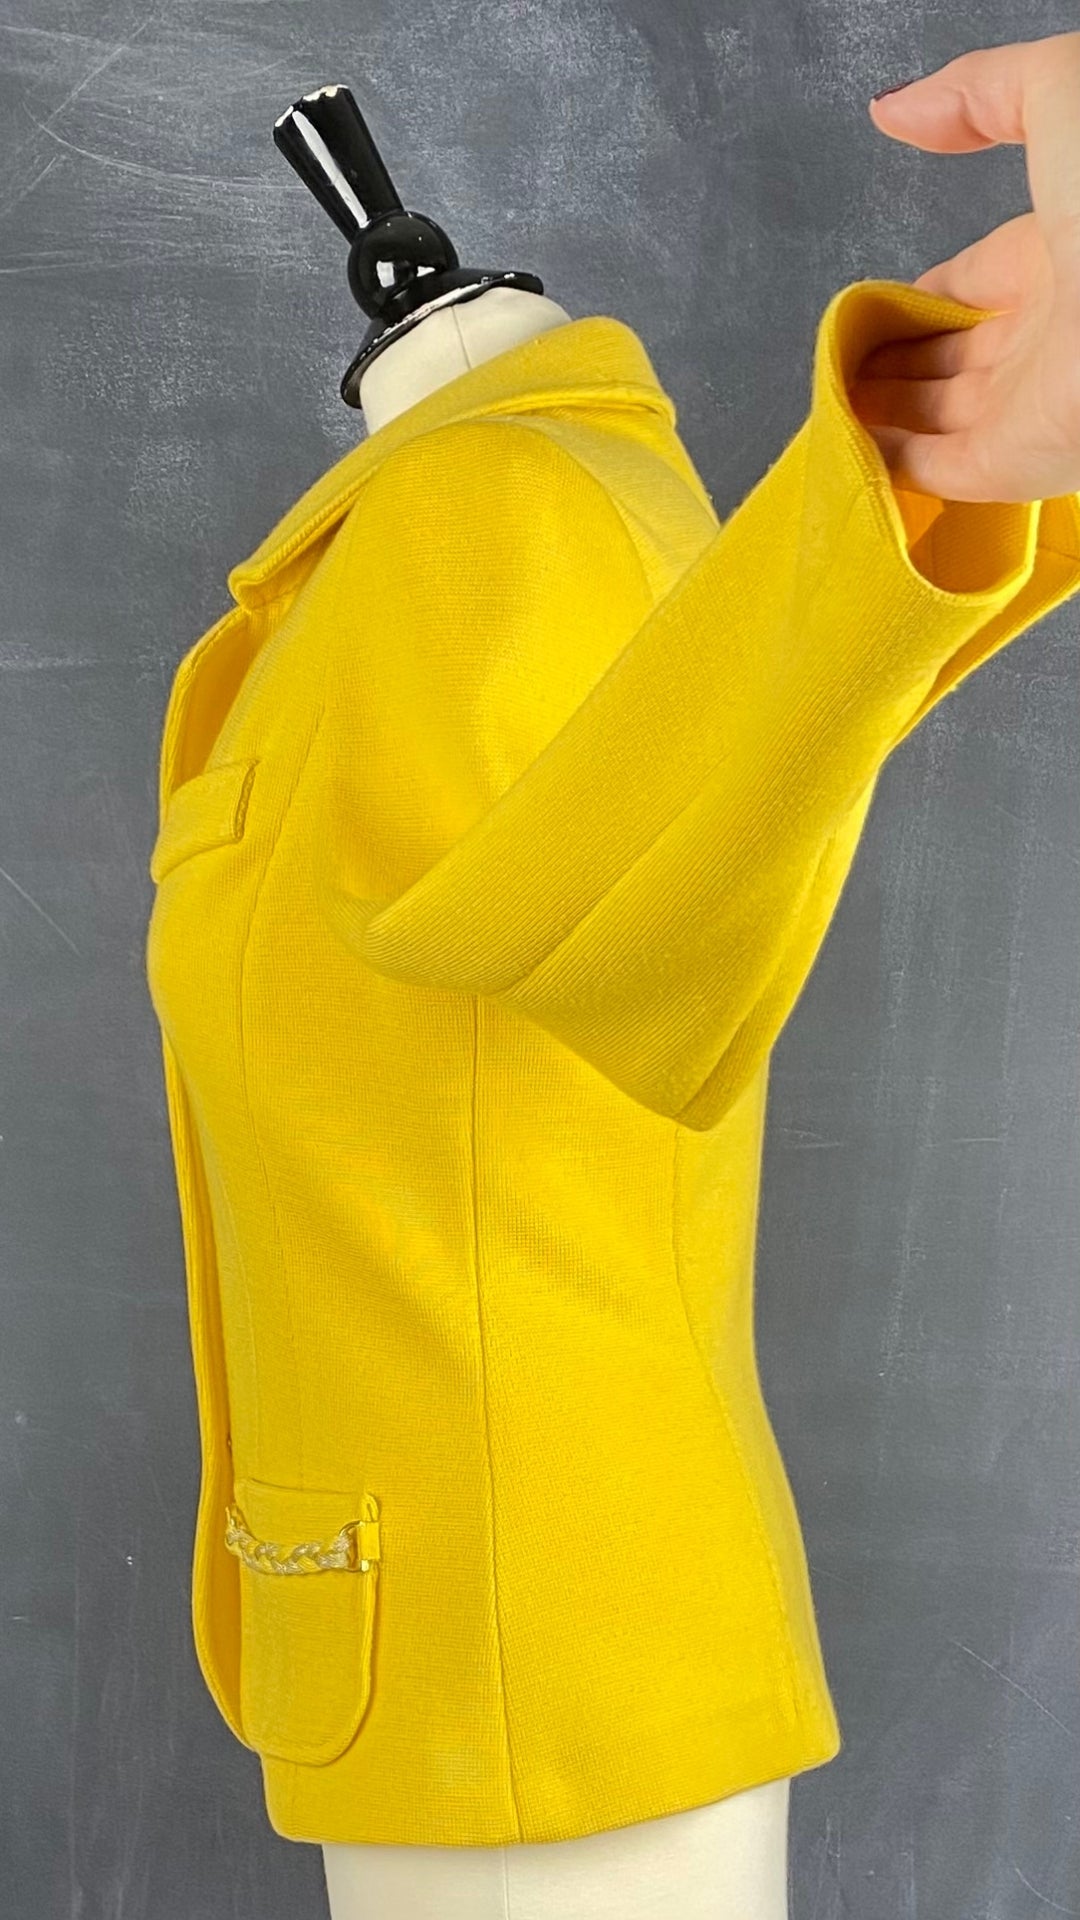 Veste style blazer jaune doré en laine Luisa Spagnoli, taille small. Vue de coté, la manche relevée.